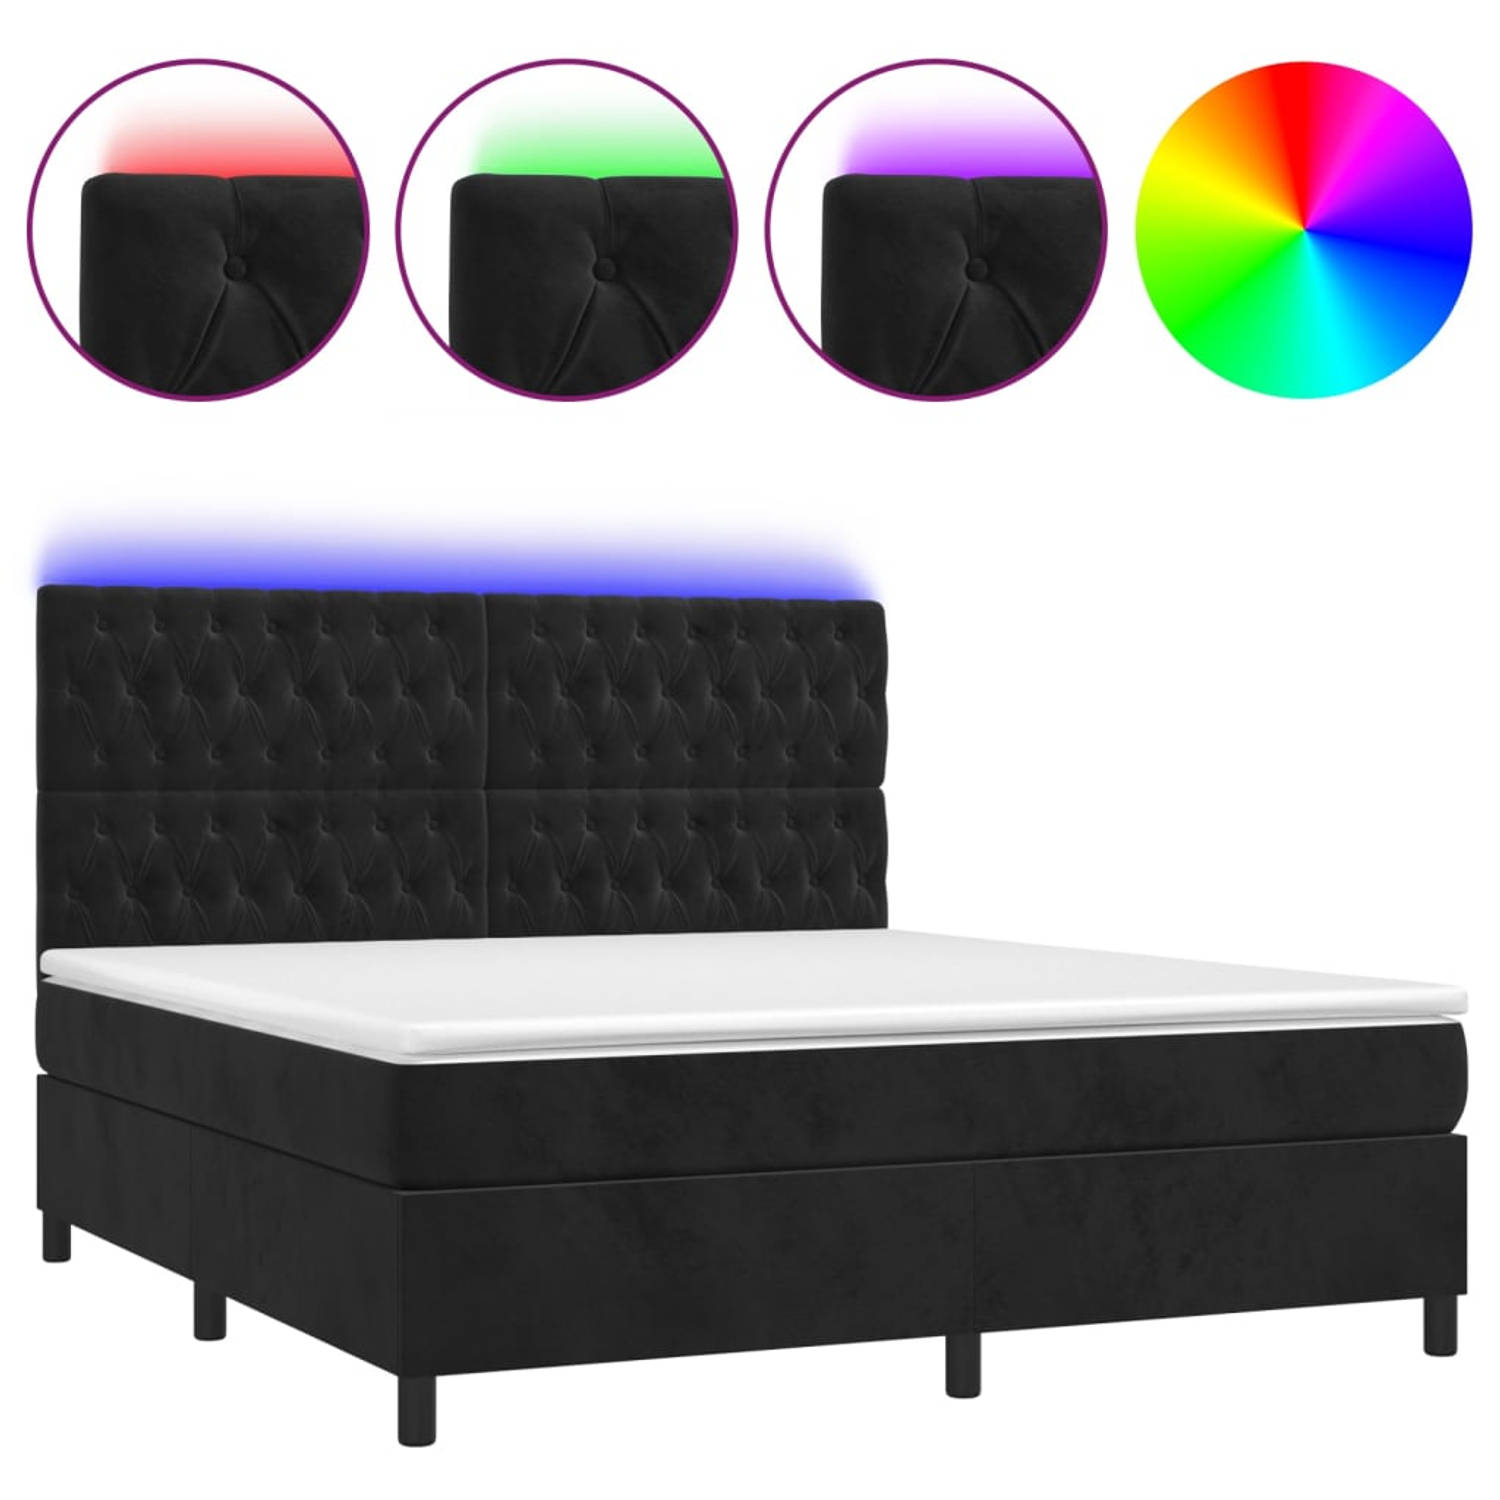 The Living Store Boxspring Bed - Zacht fluweel - Verstelbaar hoofdbord - Kleurrijke LED-verlichting - Pocketvering matras - Huidvriendelijk topmatras